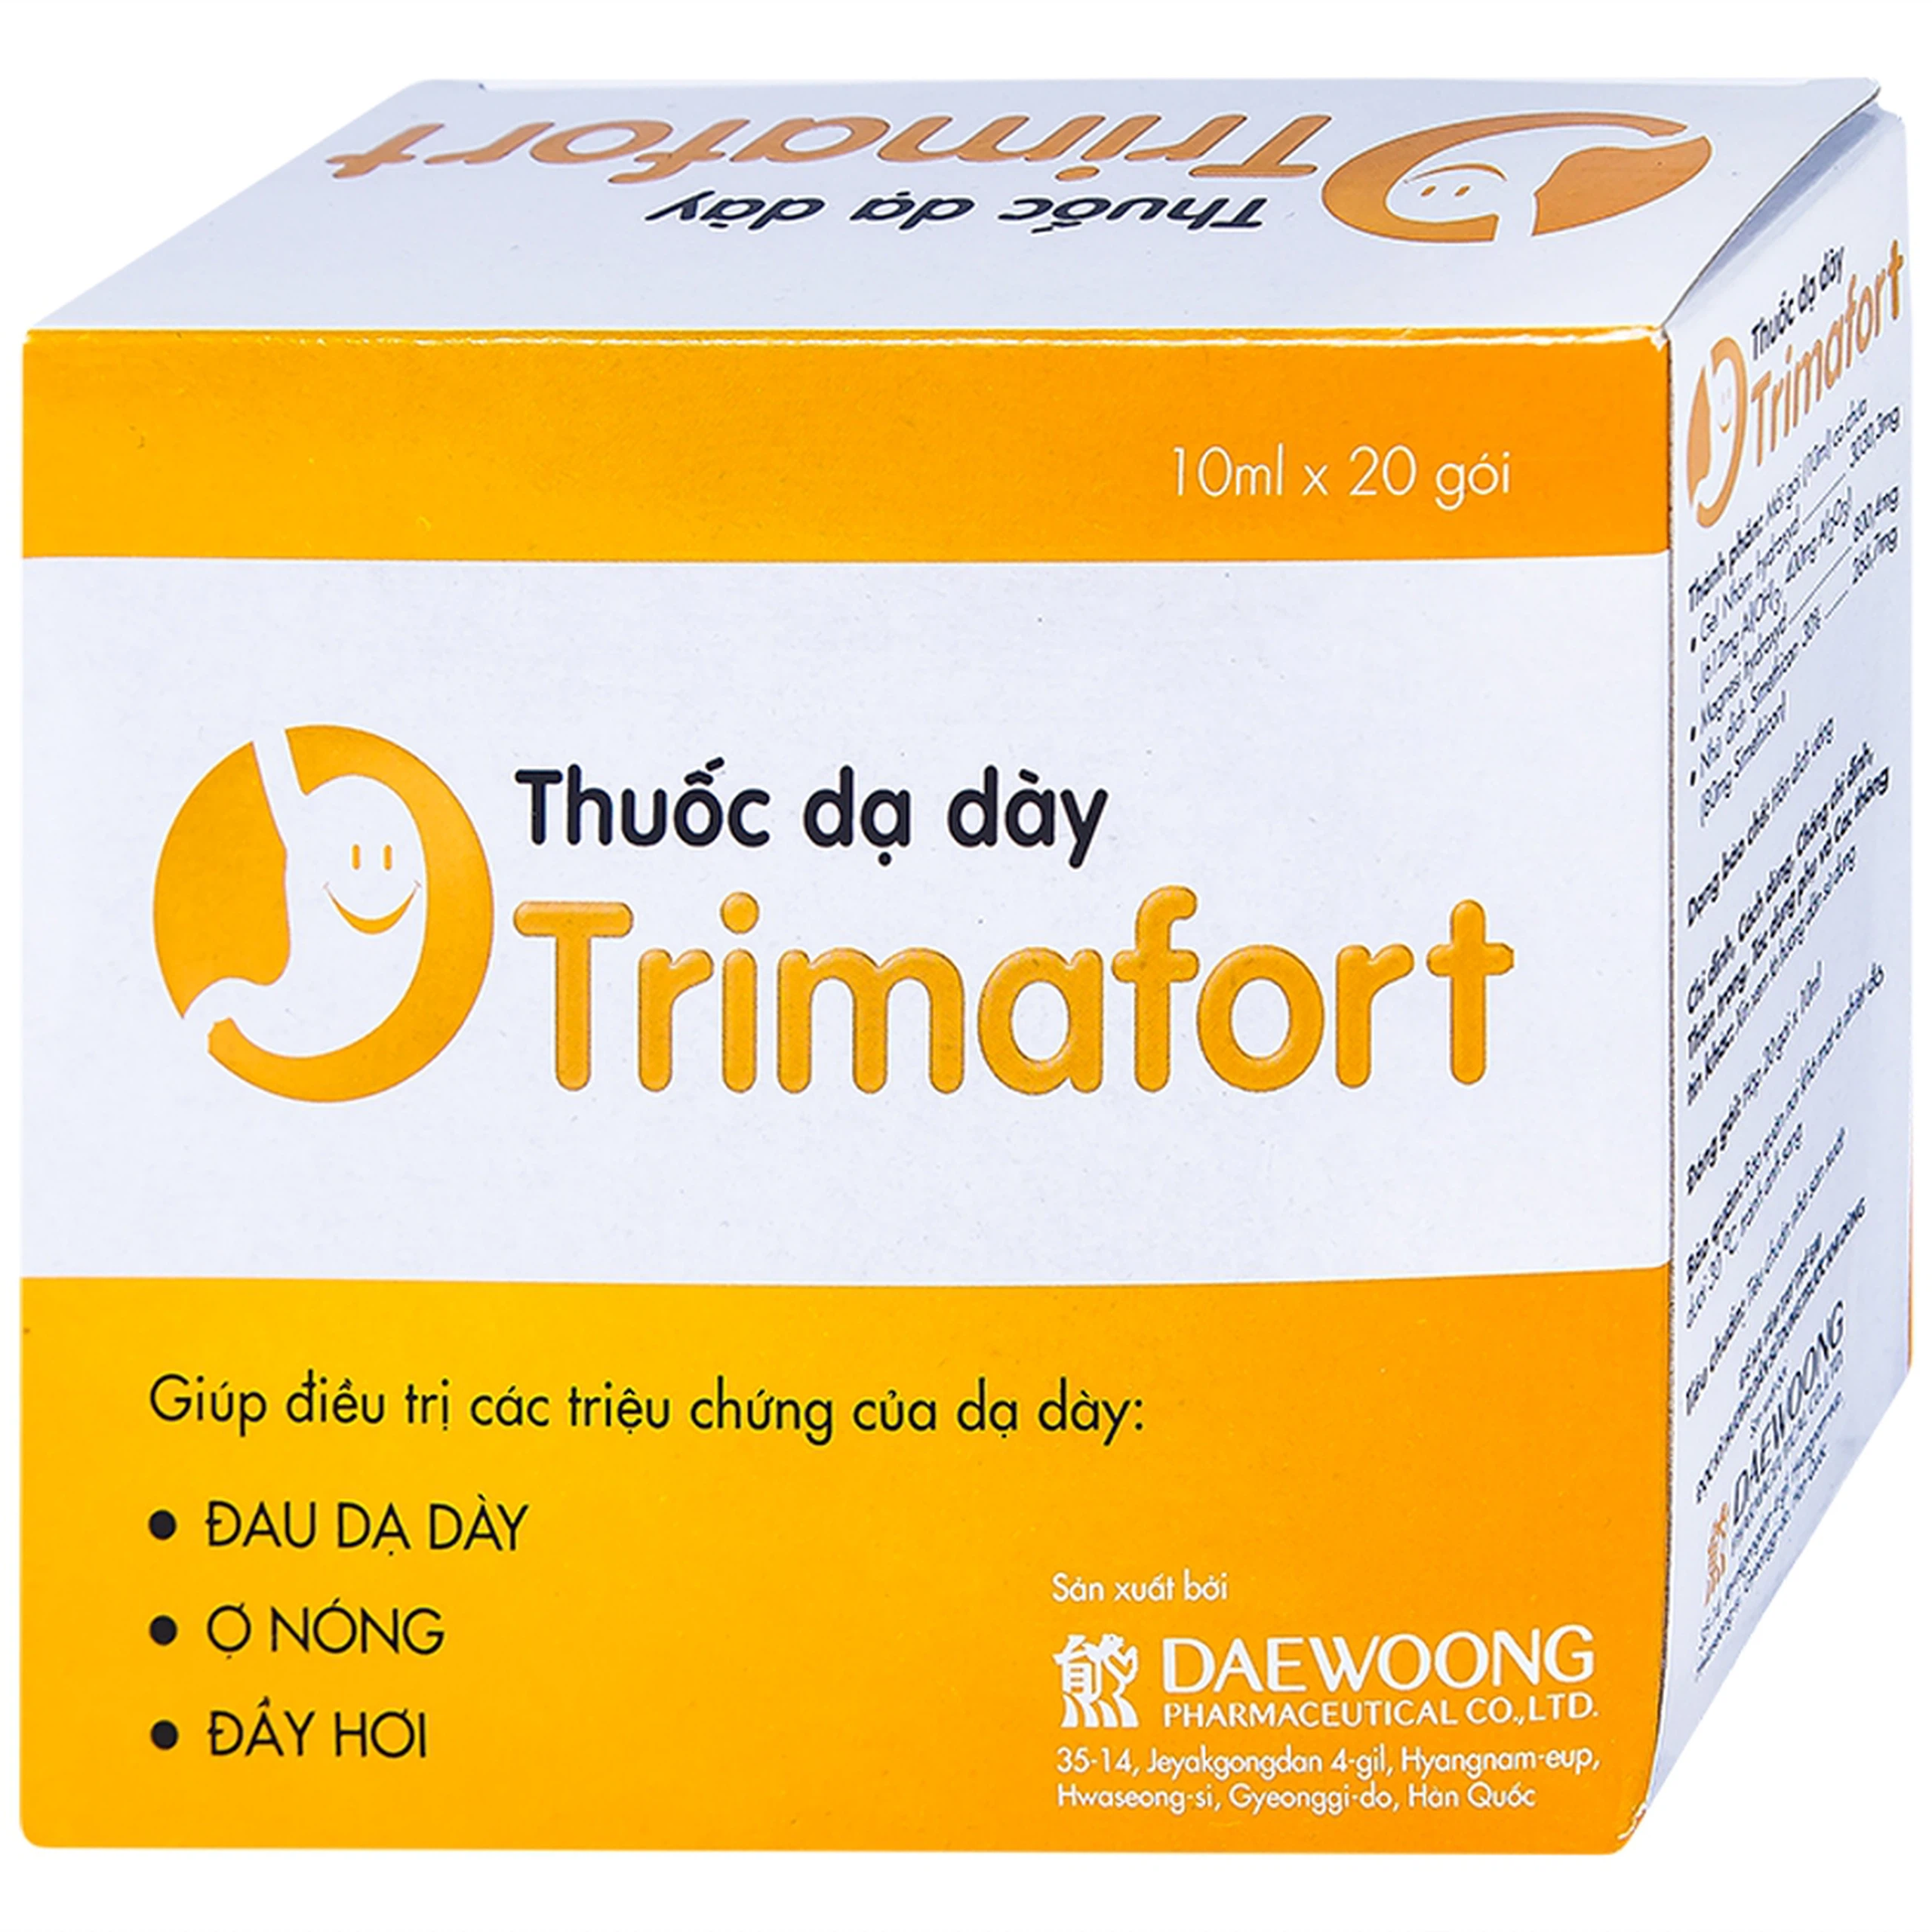 Thuốc dạ dày Trimafort Daewoong điều trị đau dạ dày, ợ nóng, đầy hơi (20 gói x 10ml) 